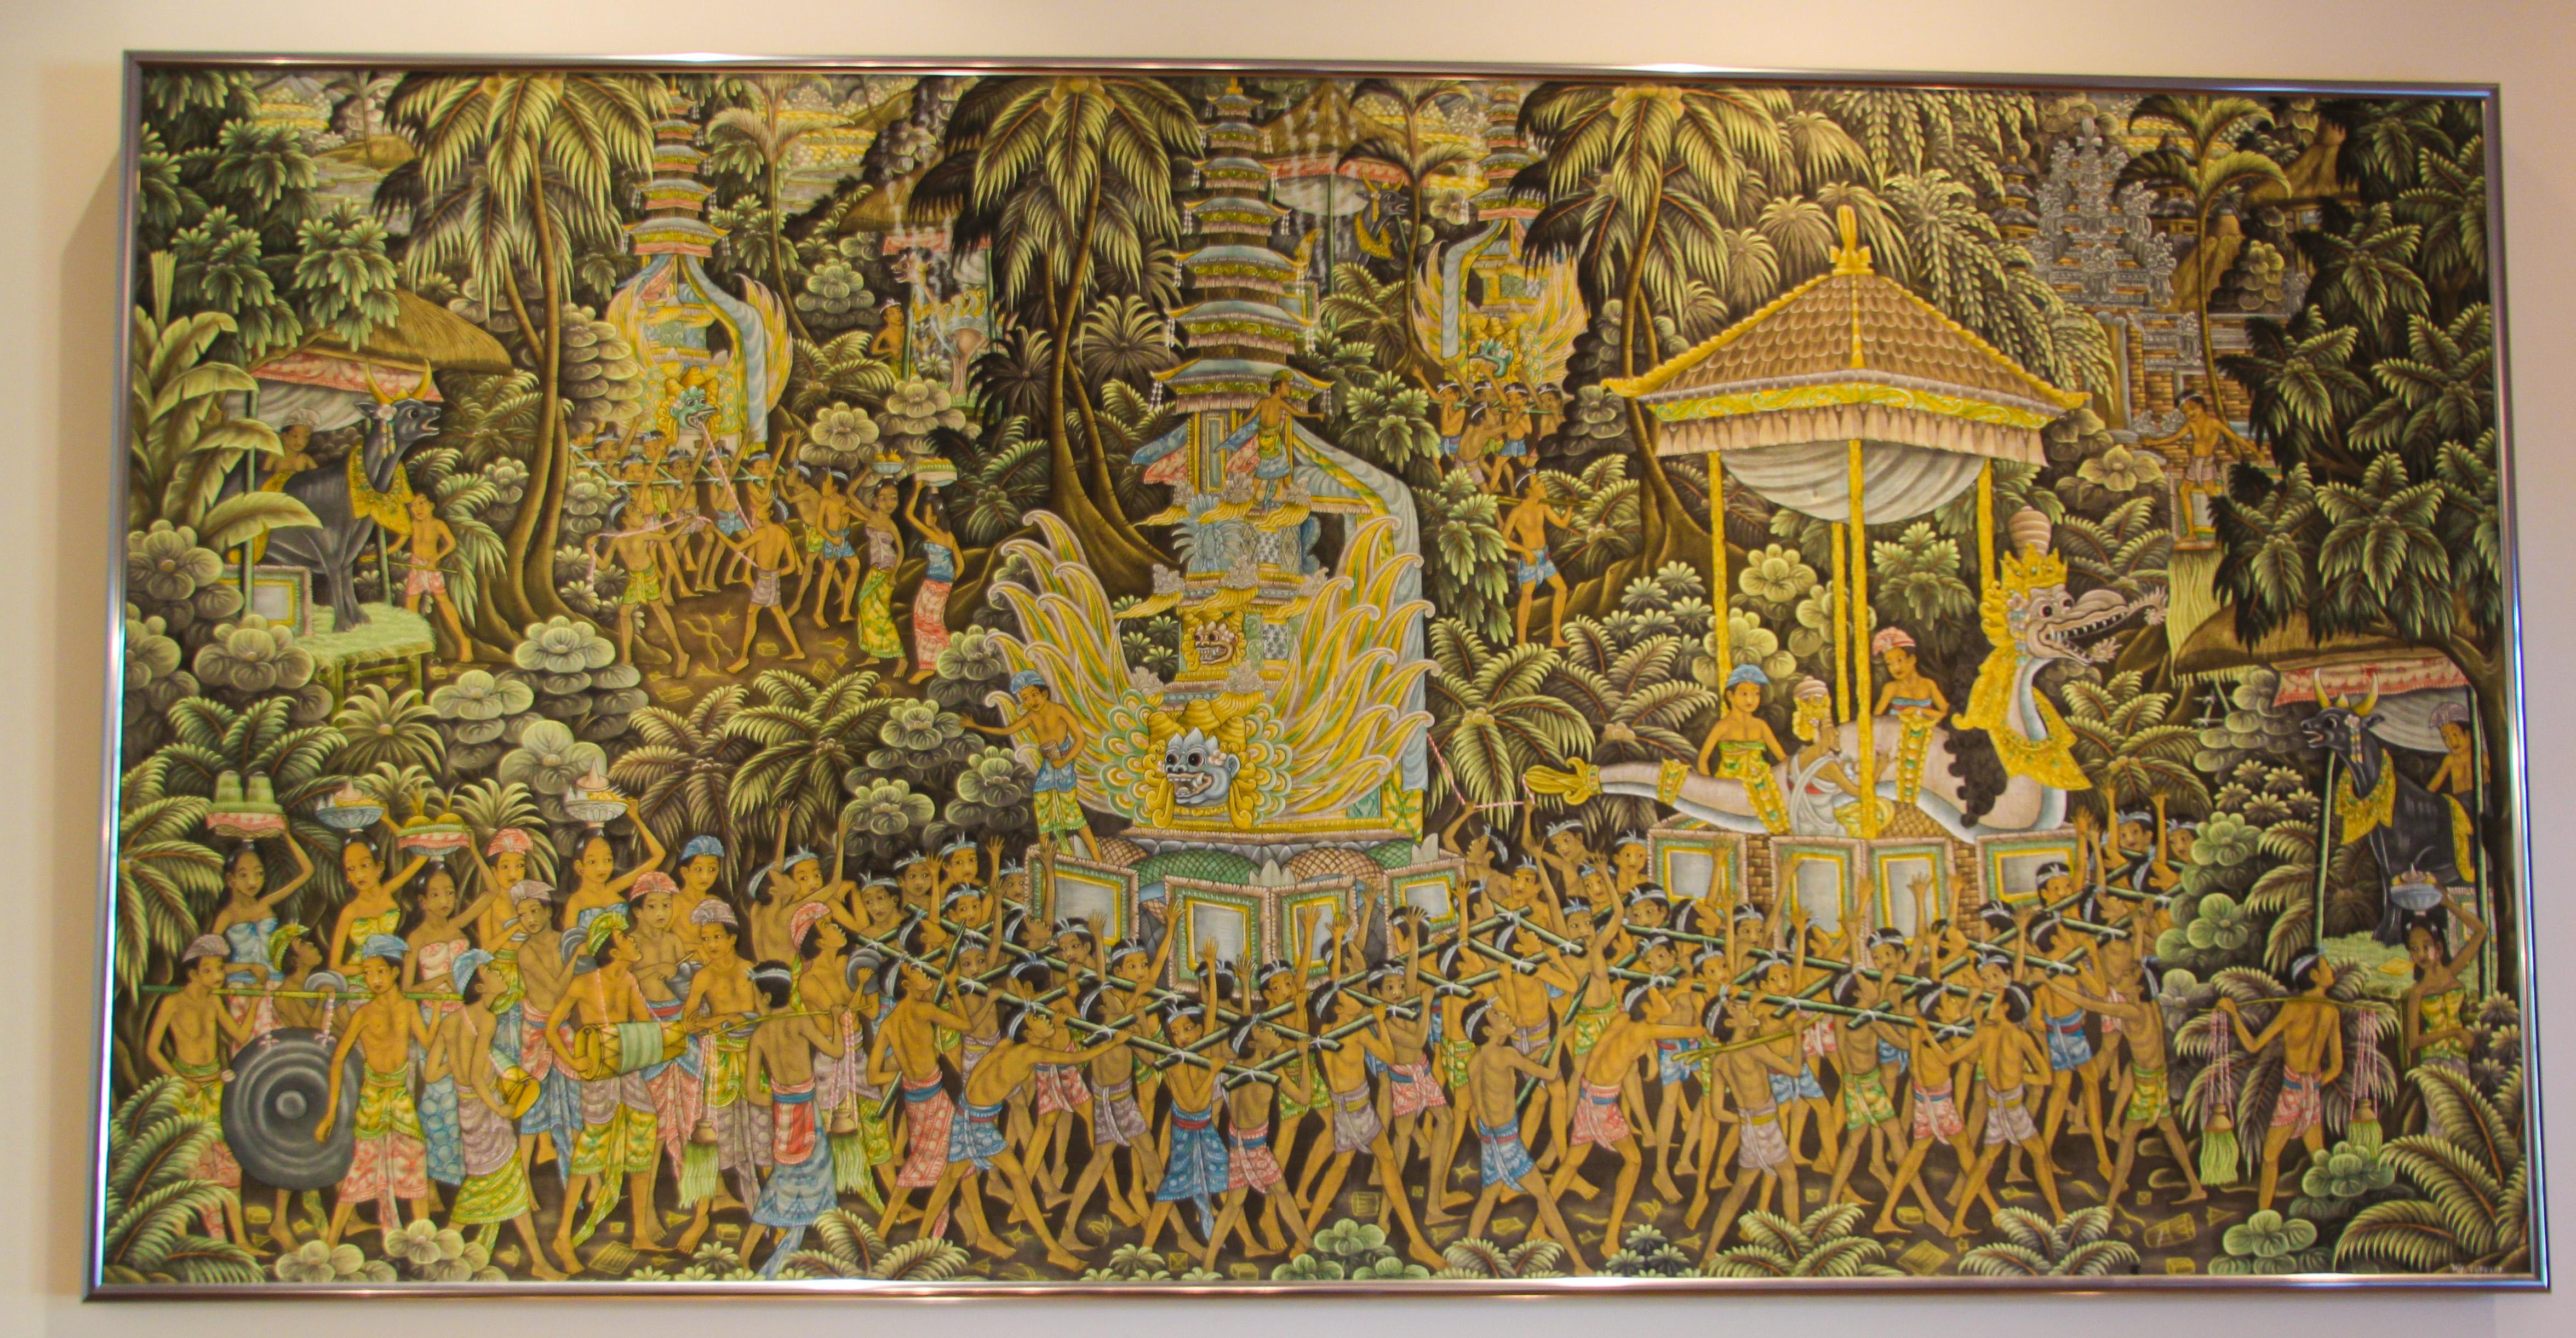 Peinture balinaise du milieu du XXe siècle sur tissu de soie, encadrée.
Grande peinture d'art balinaise vintage, d'Ubud, Bali acrylique sur soie.
Magnifique œuvre d'art de l'artiste indonésien d'Ubud. 
Peint à Peliatan, Ubud Bali par W. Kurpelir,